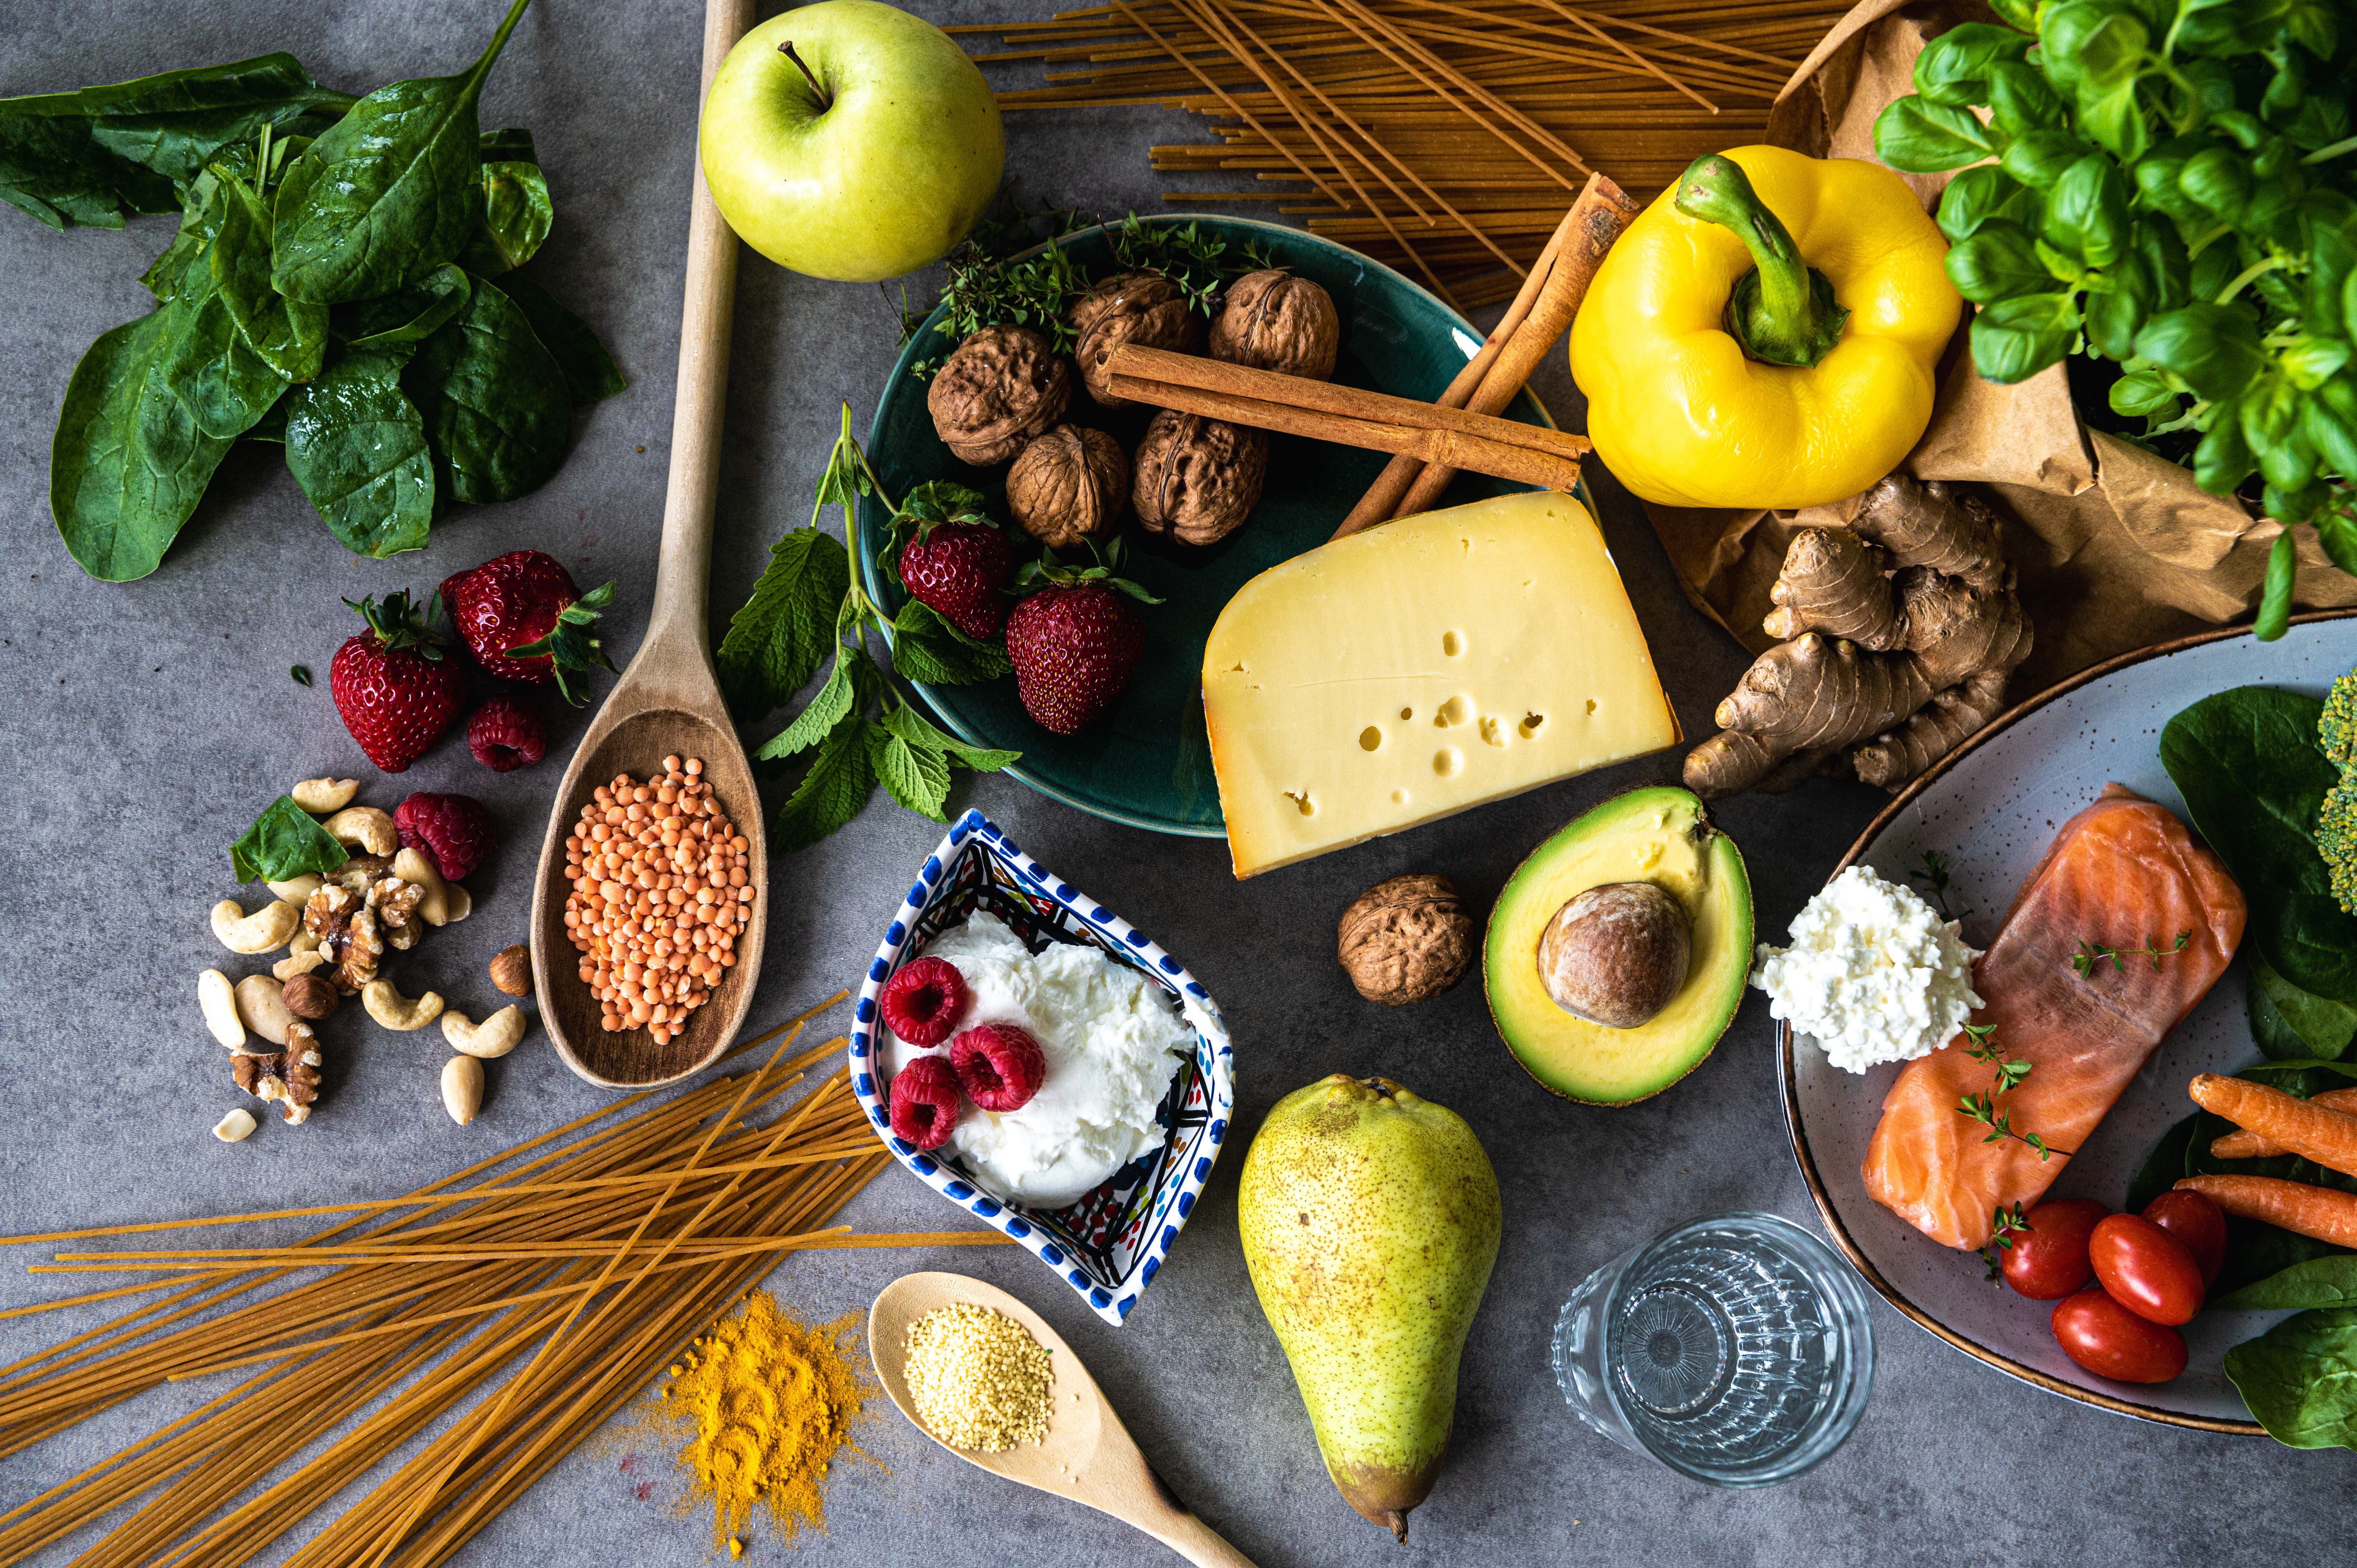 Auf einem grauen Hintergrund liegen verschiedene Lebensmittel darunter Käse, Nudeln, Linsen, Obst, Gemüse, Fisch und Nüsse sowie Kräuter.